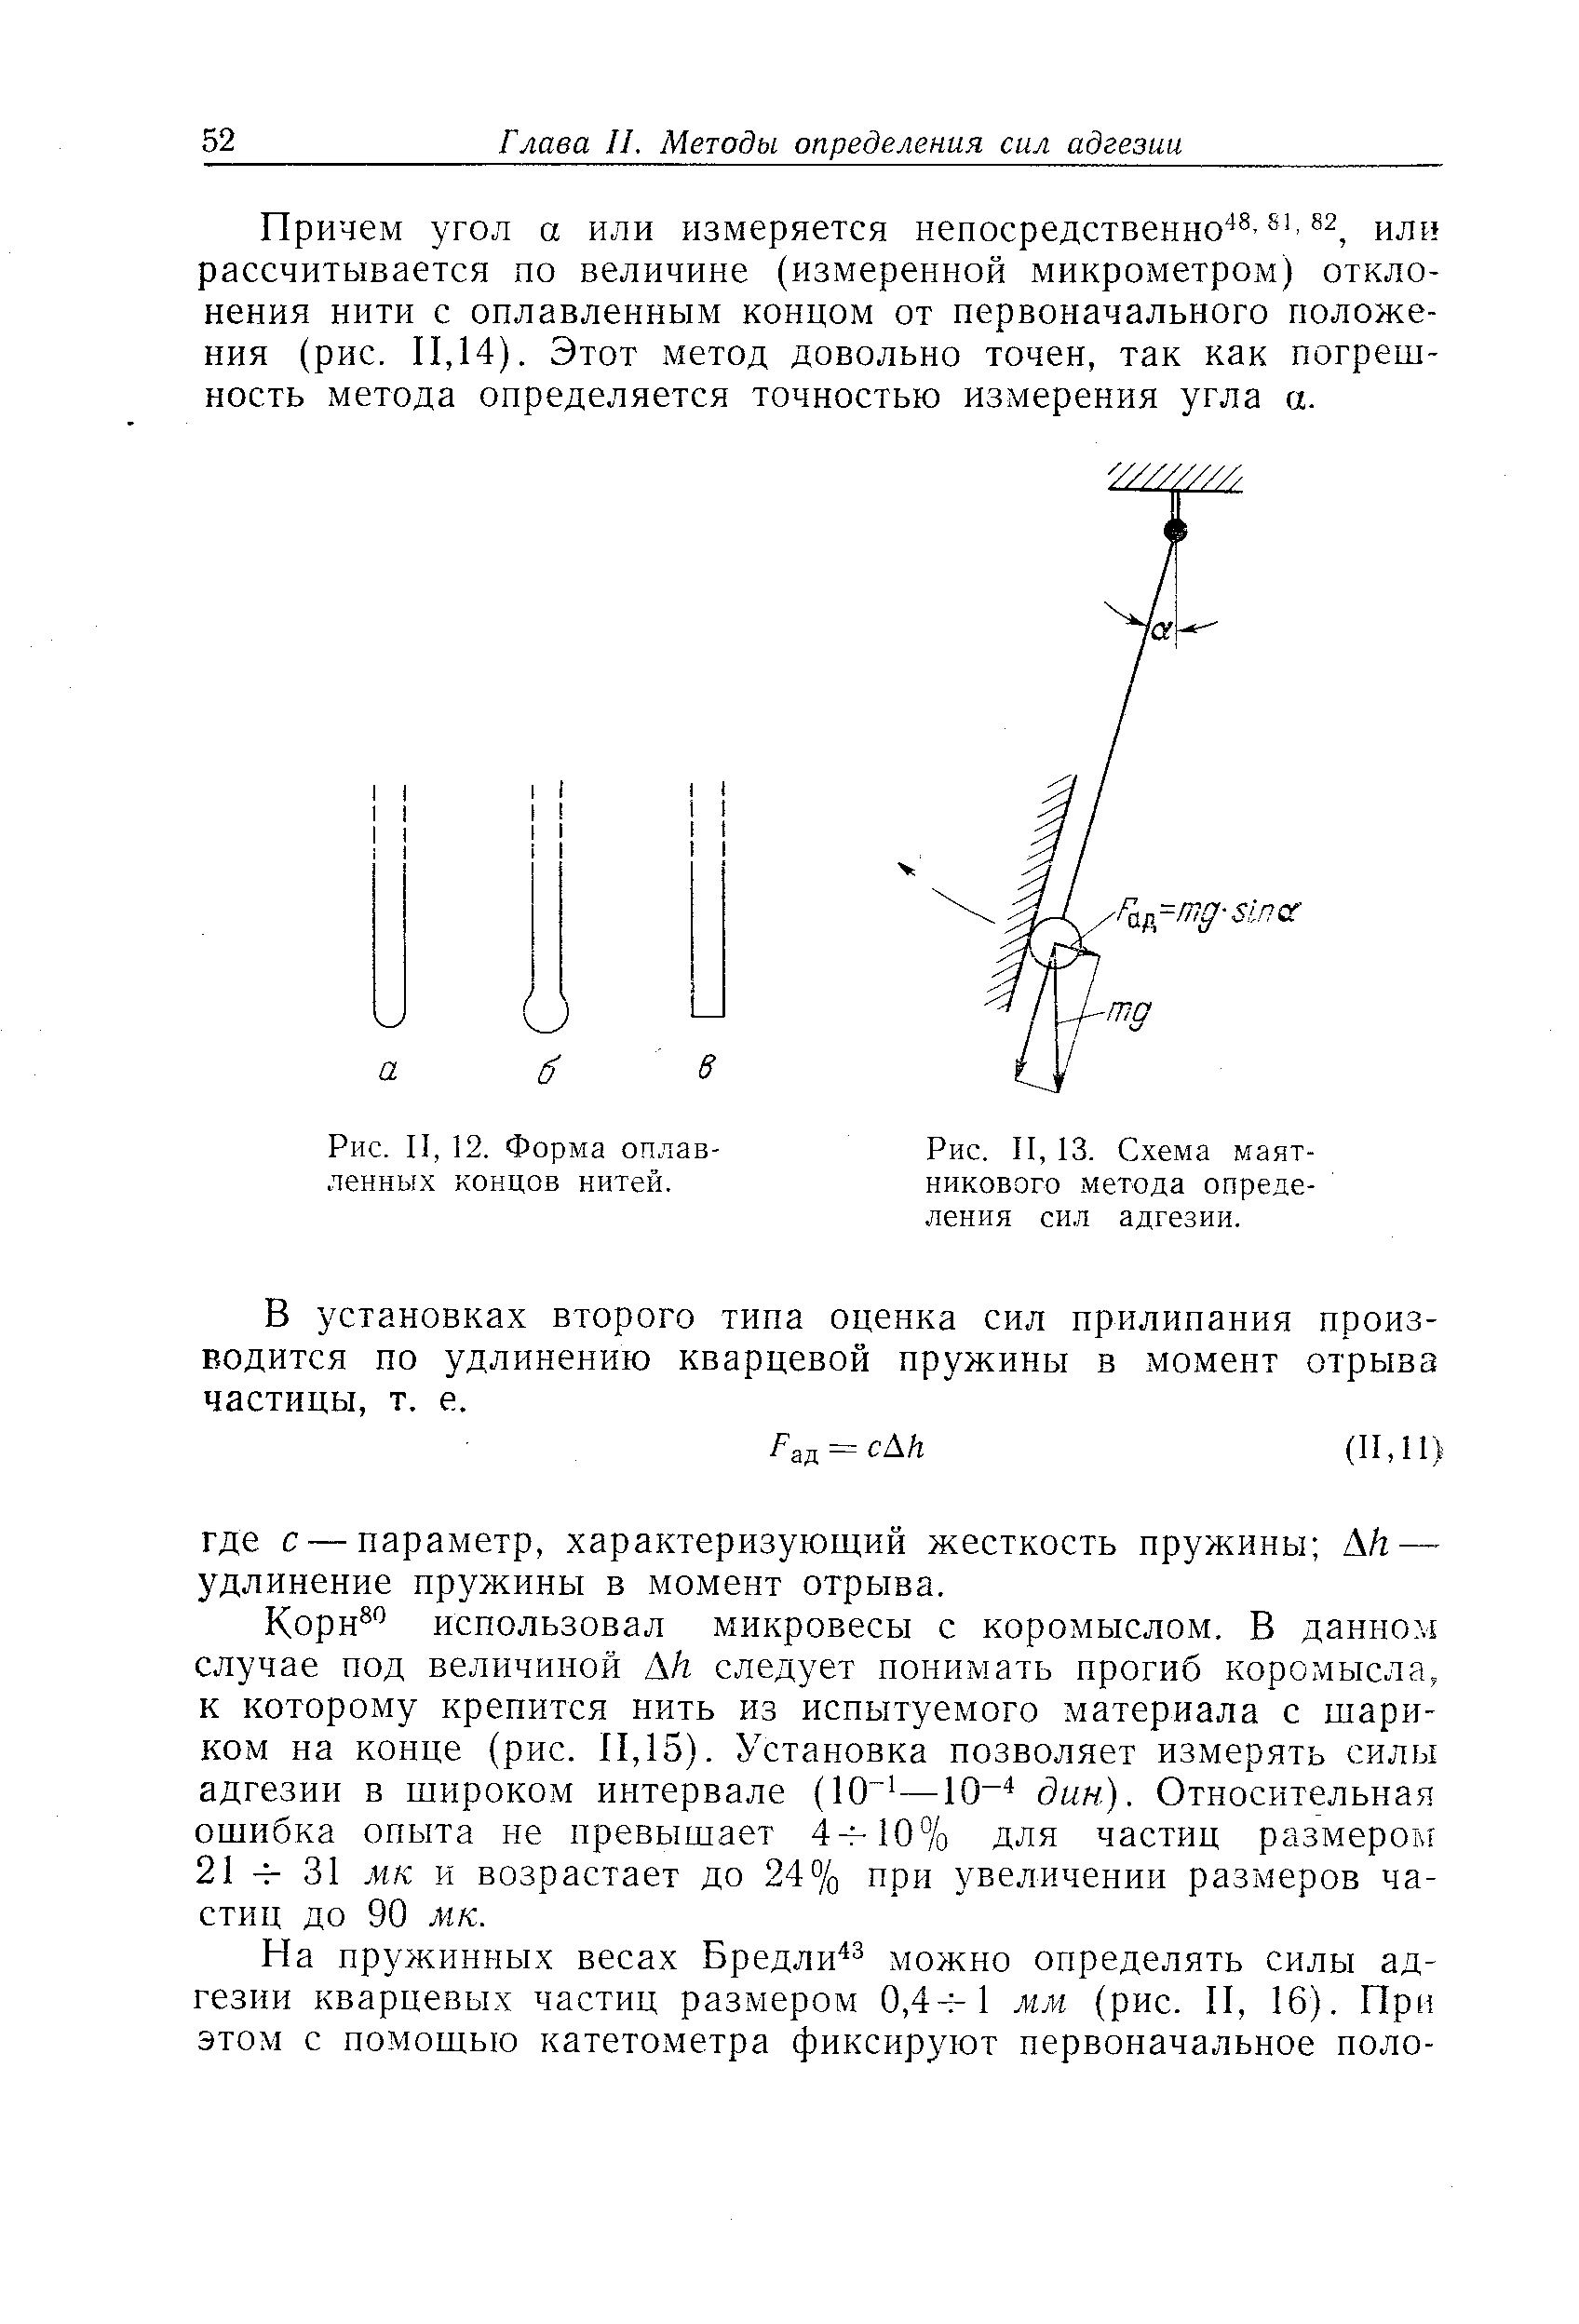 Рис. II, 13. Схема маятникового <a href="/info/335321">метода определения</a> сил адгезии.
